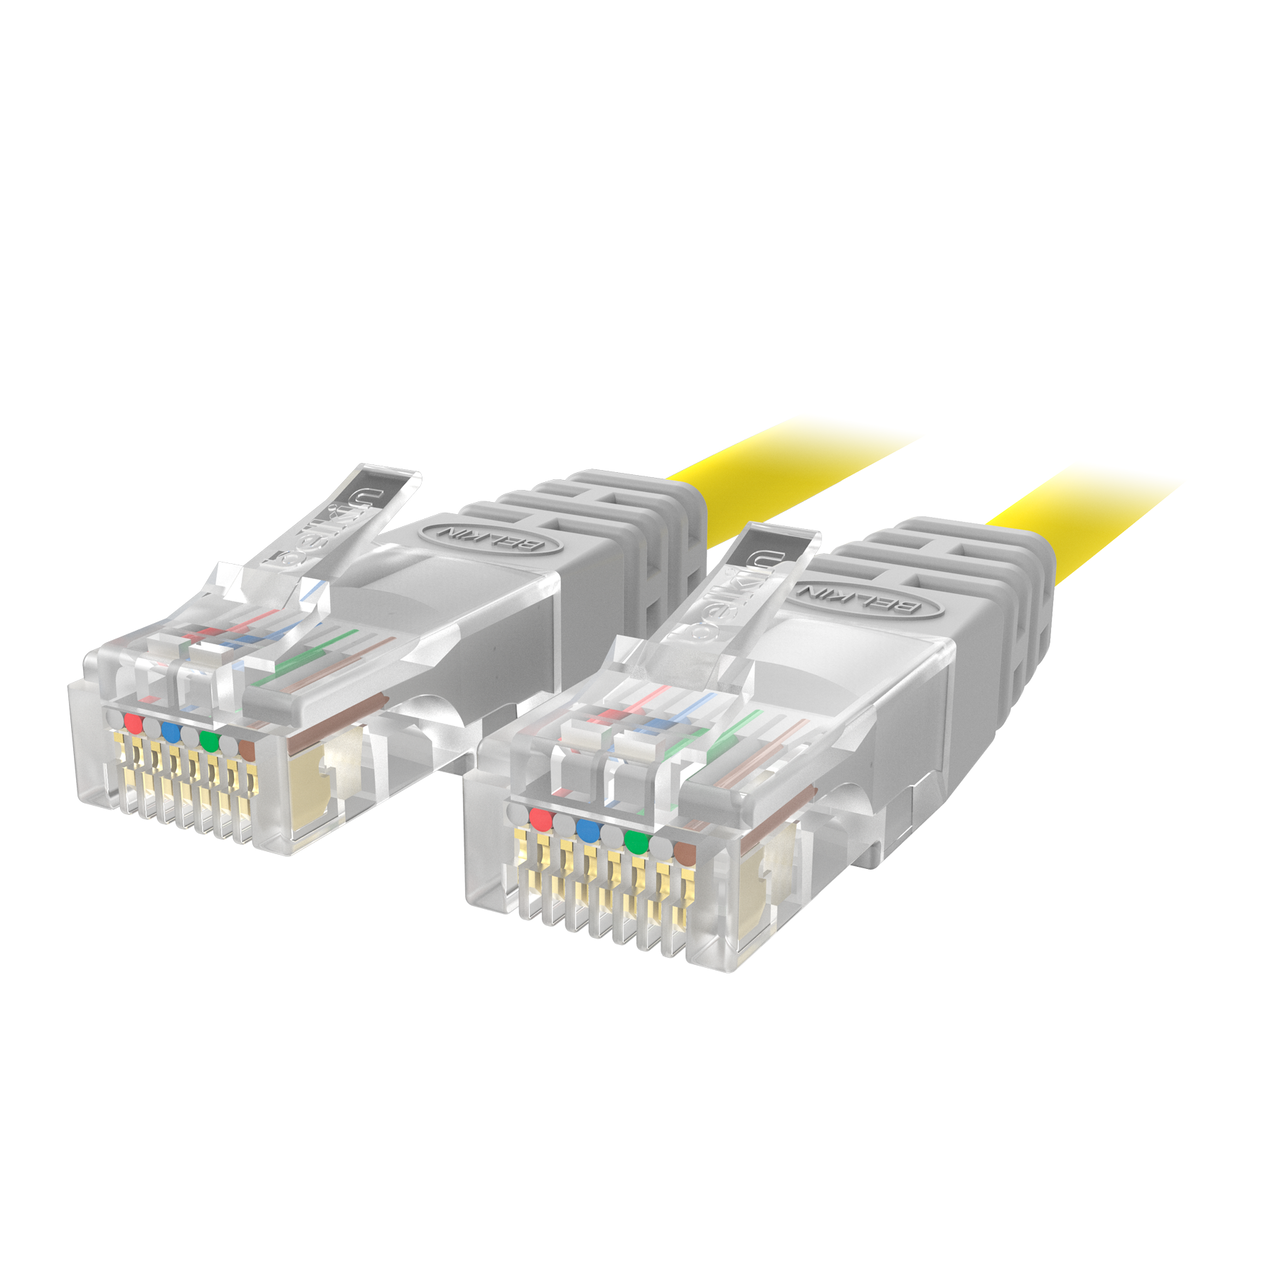 Câble Ethernet Cordon 5 FT environ 1.52 m Belkin Cat 5e Patch ECAT Violet 5-4PR-05-PU 